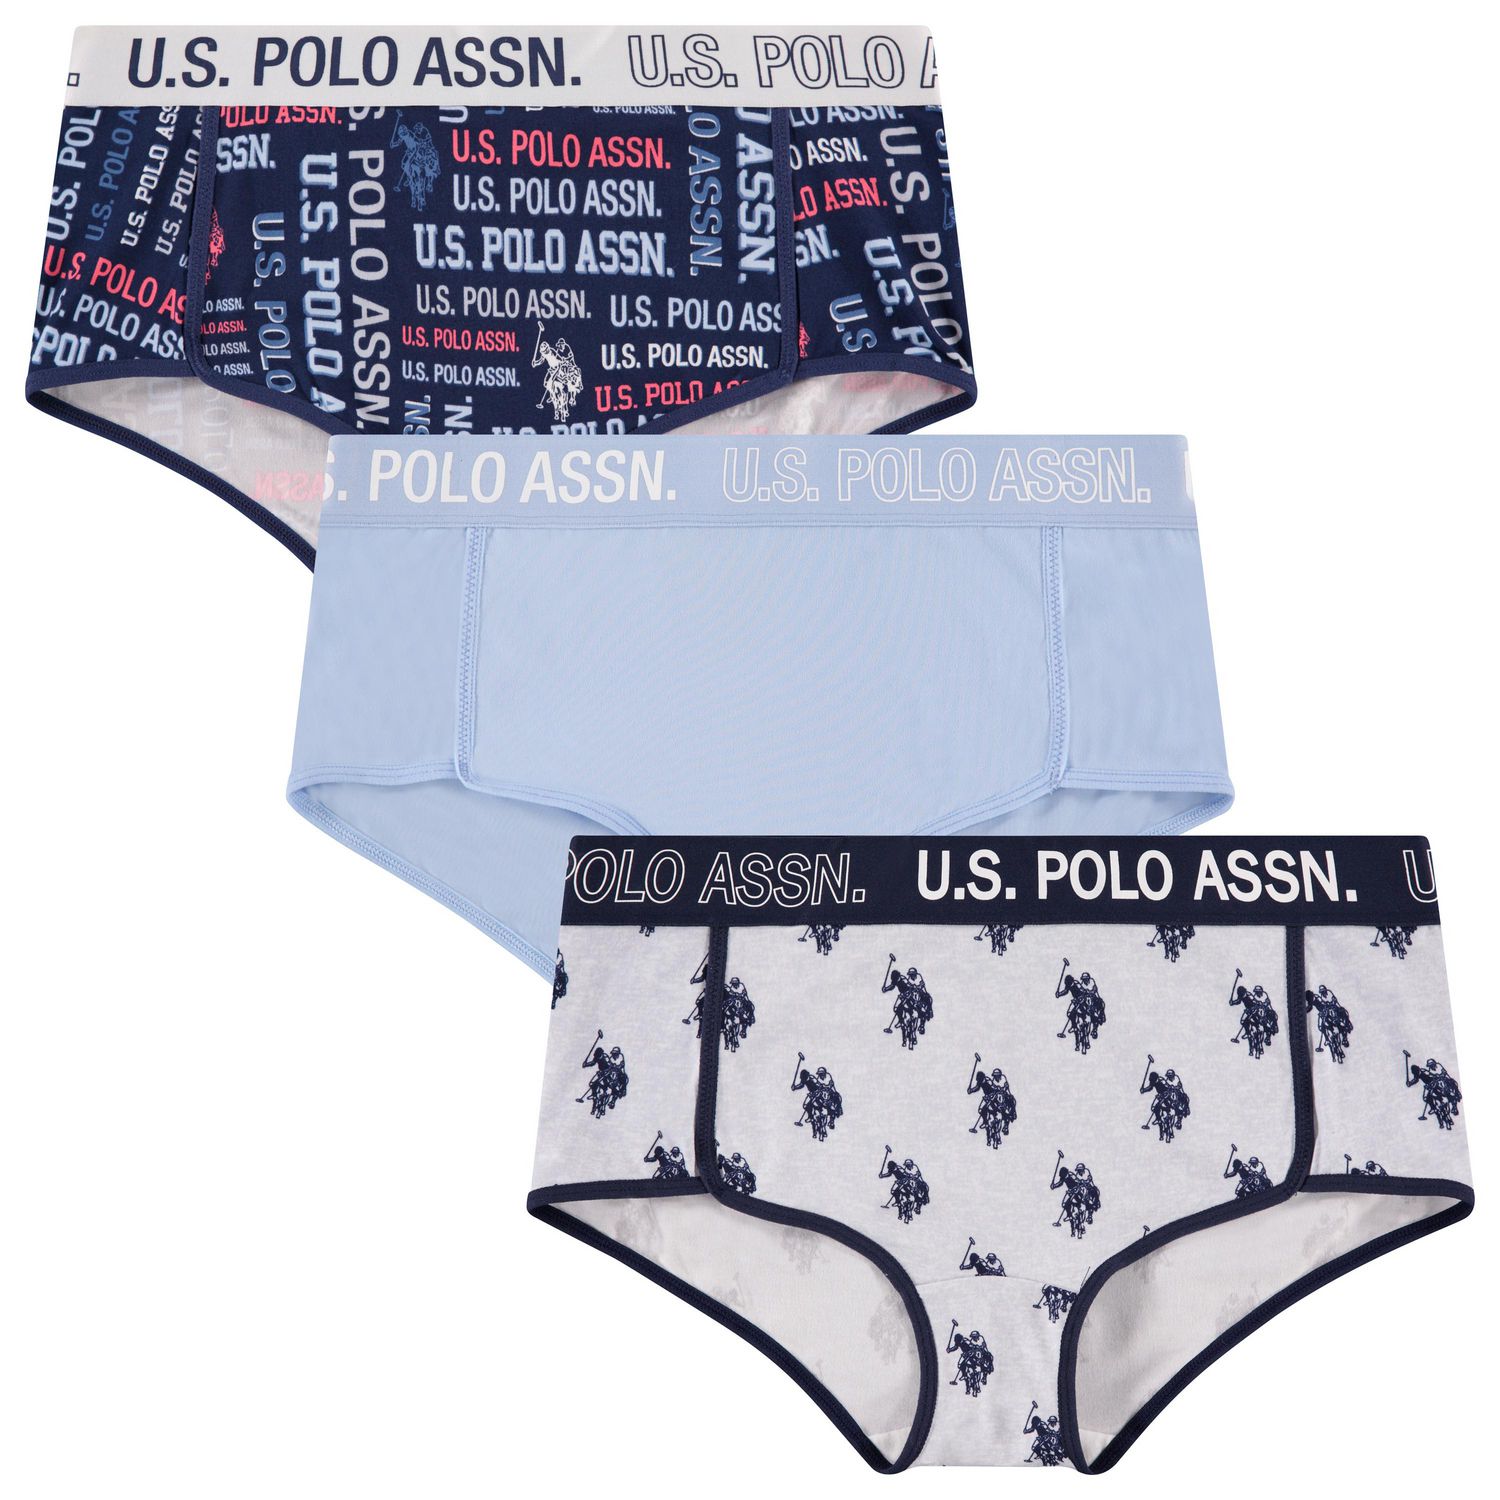 U.S. Polo Assn. Women's 3-Pack Soft Microfiber Boylegs 